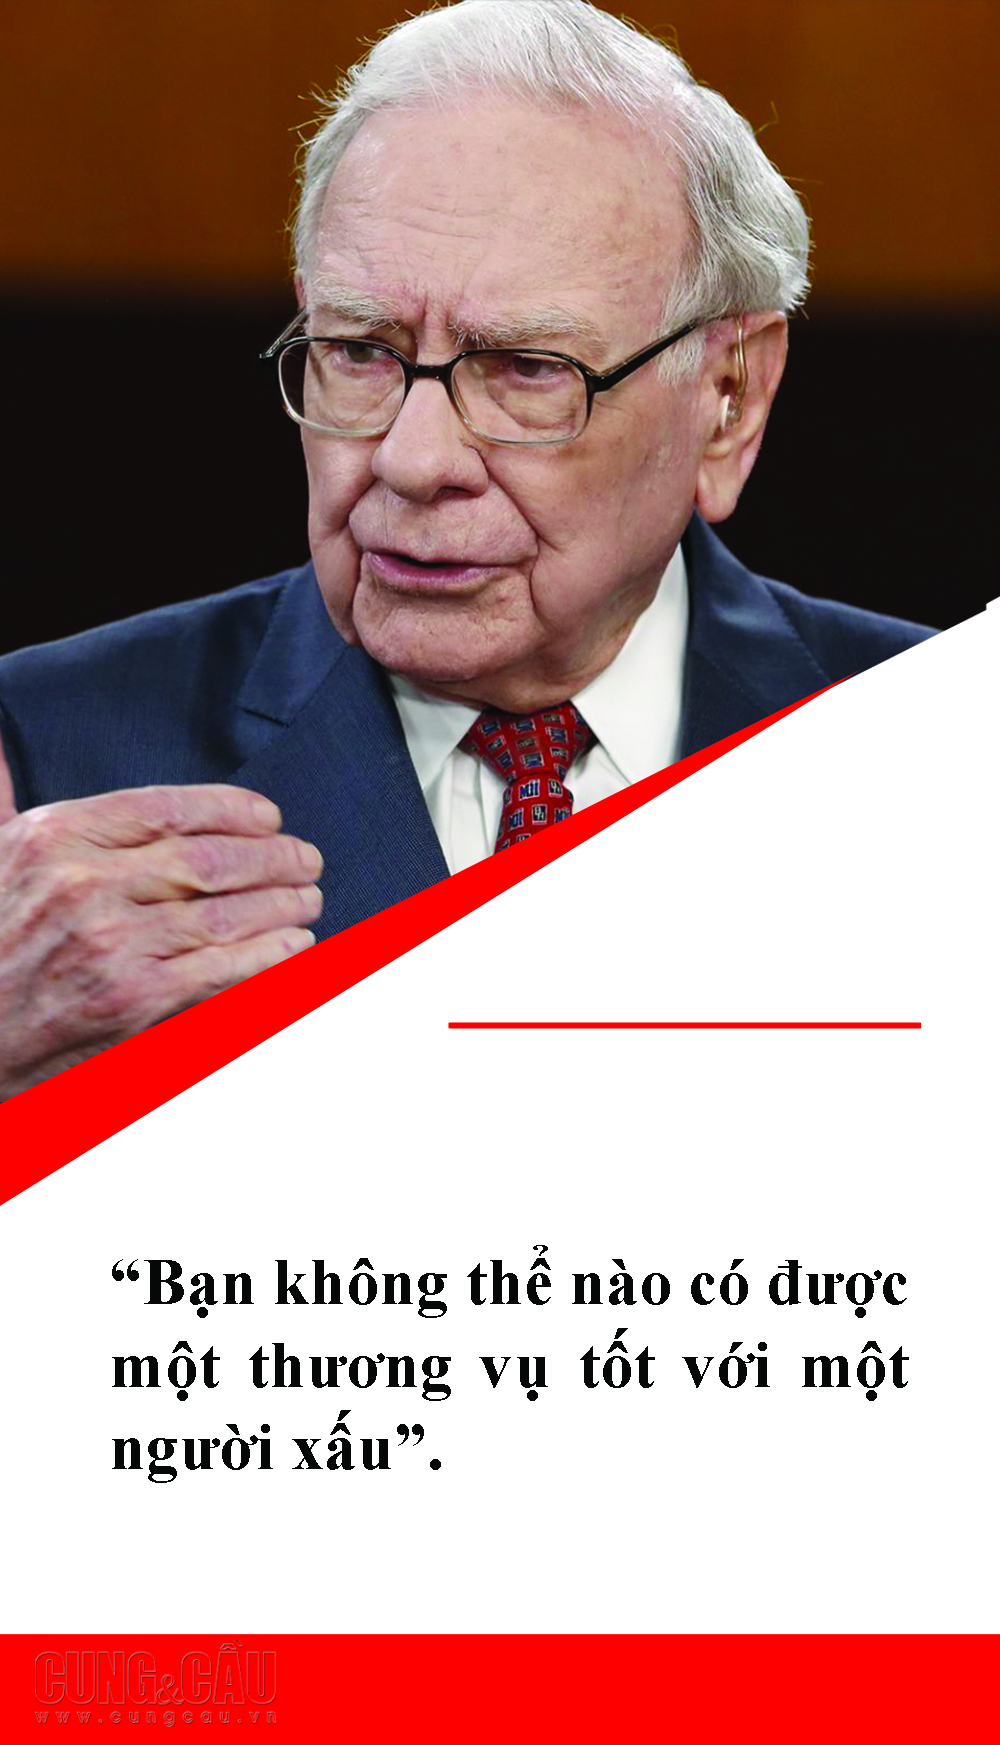 Những câu nói bất hủ của nhà đầu tư huyền thoại Warren Buffett